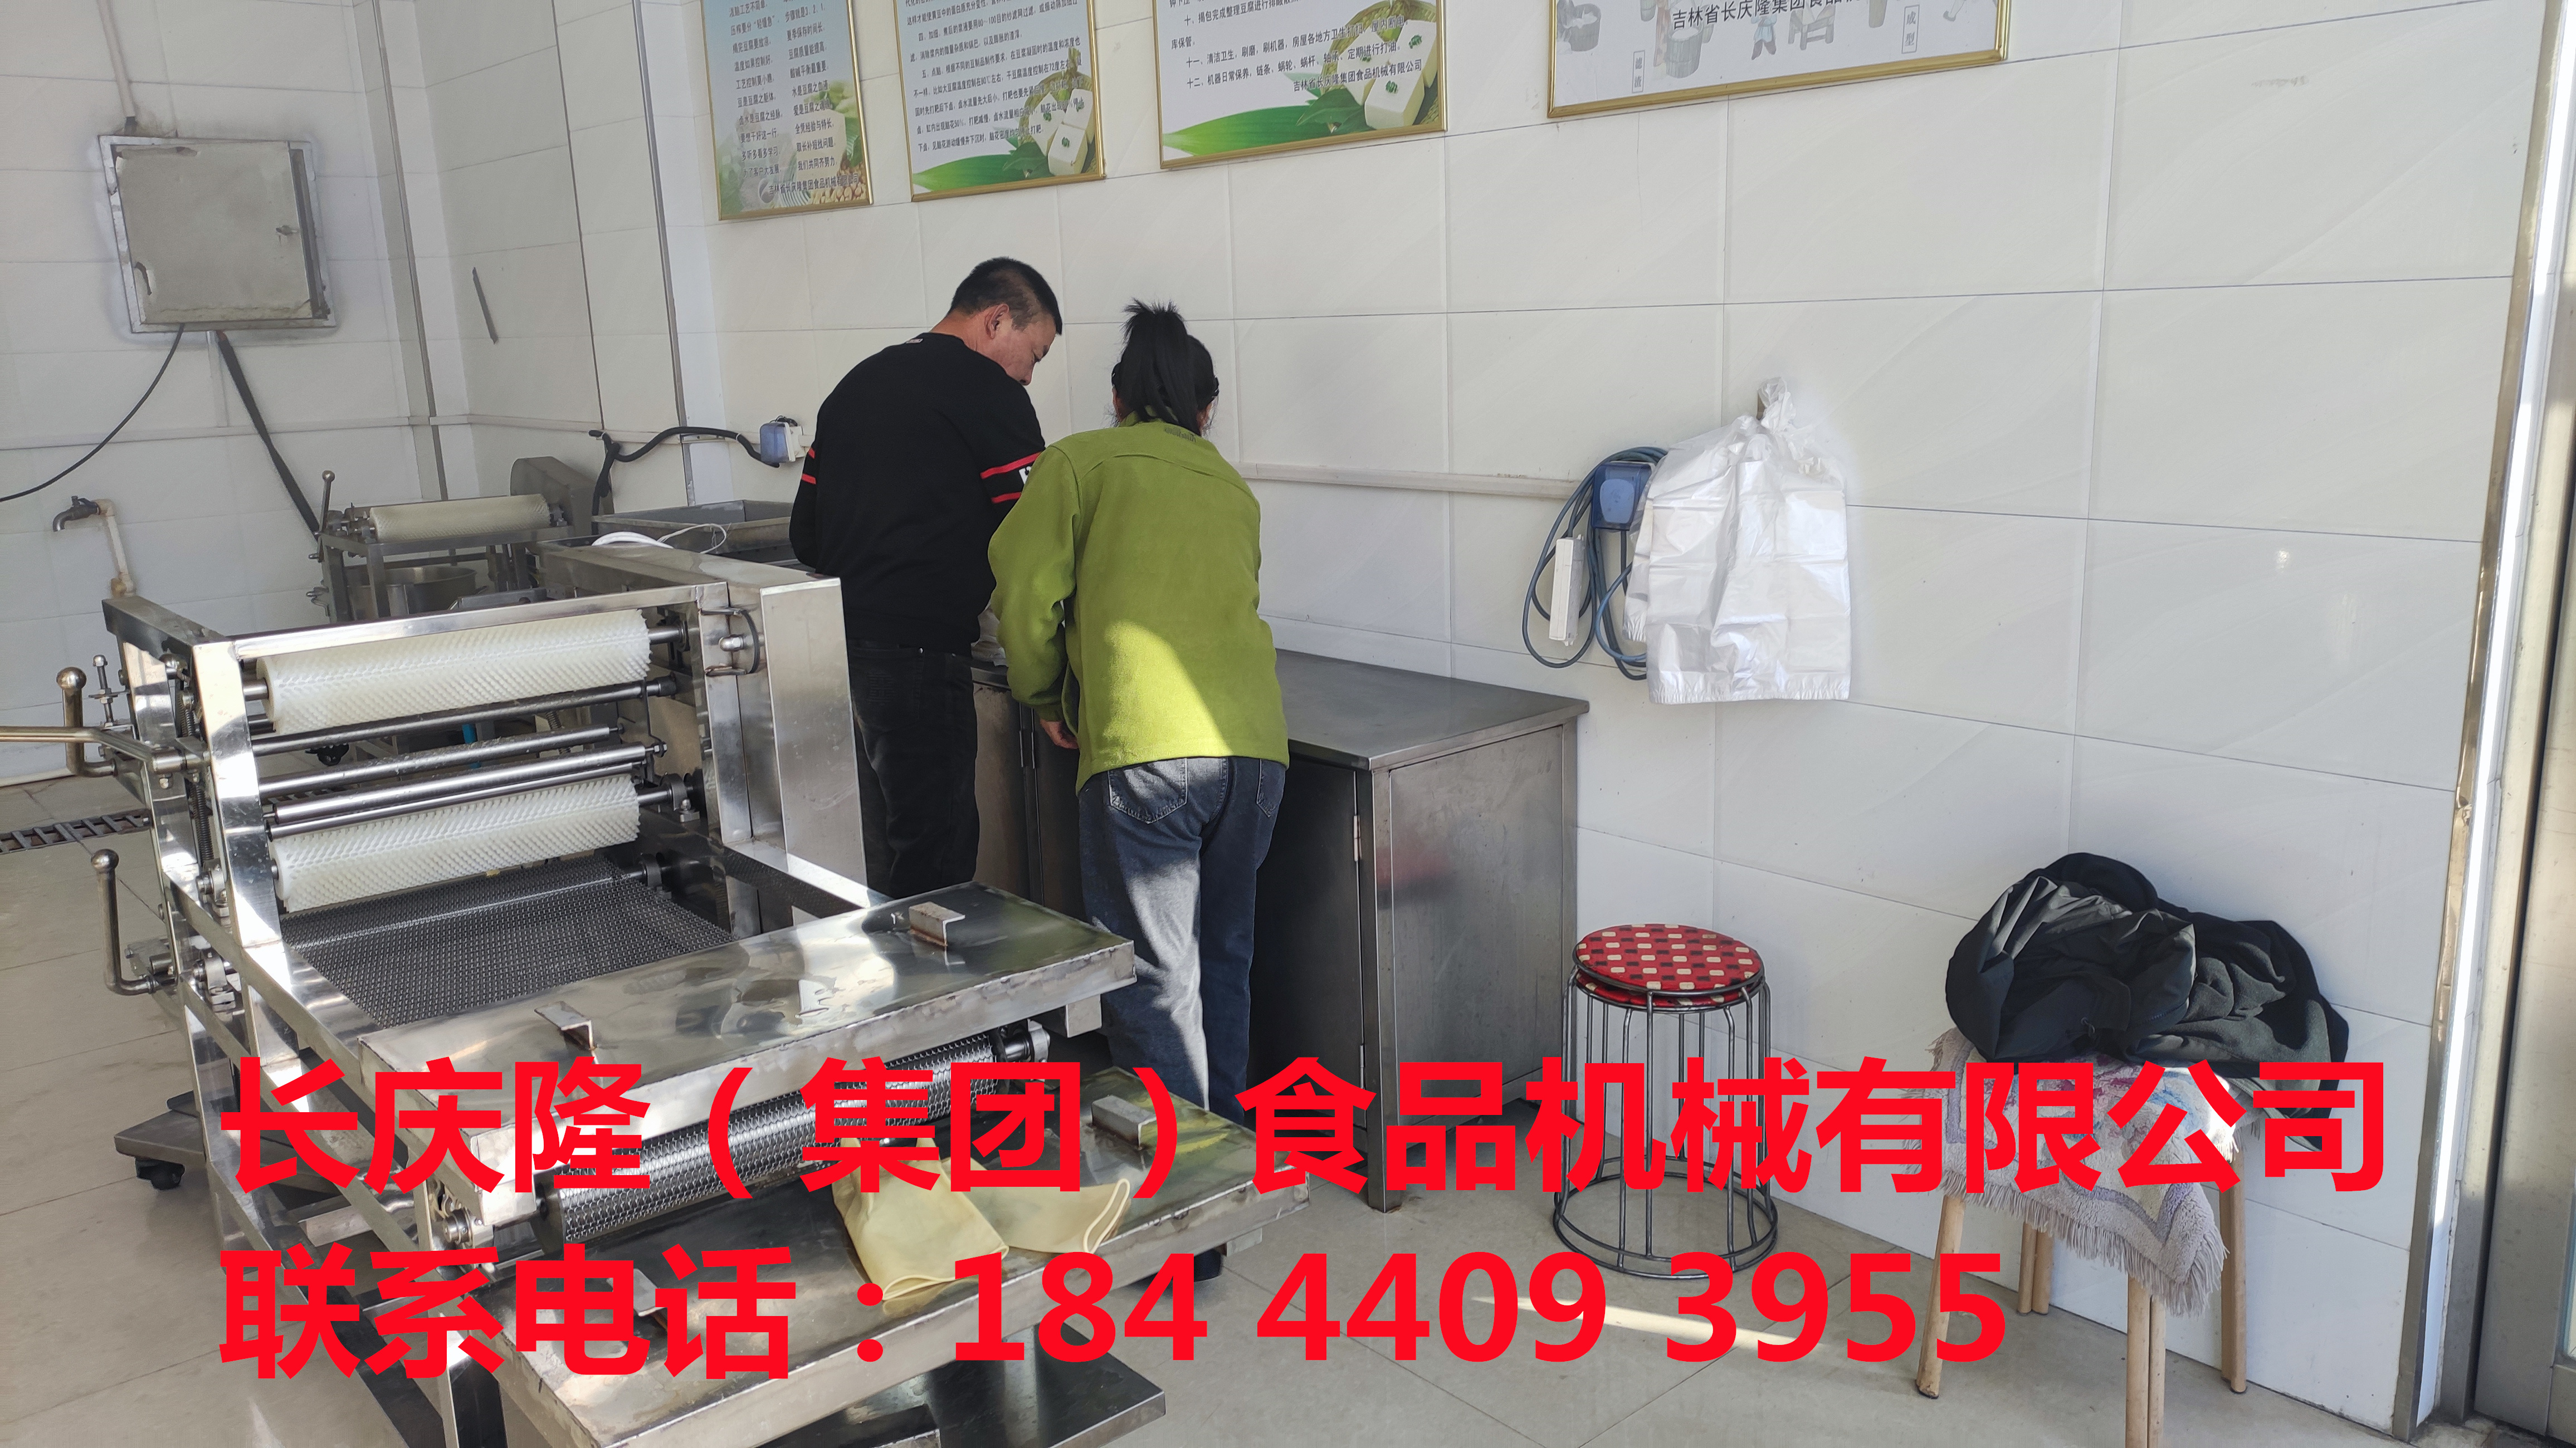 长春潘先生夫妇购买了大豆腐机，仿手工干豆腐机全套设备学习完毕，签订合同中 (2)_副本.jpg